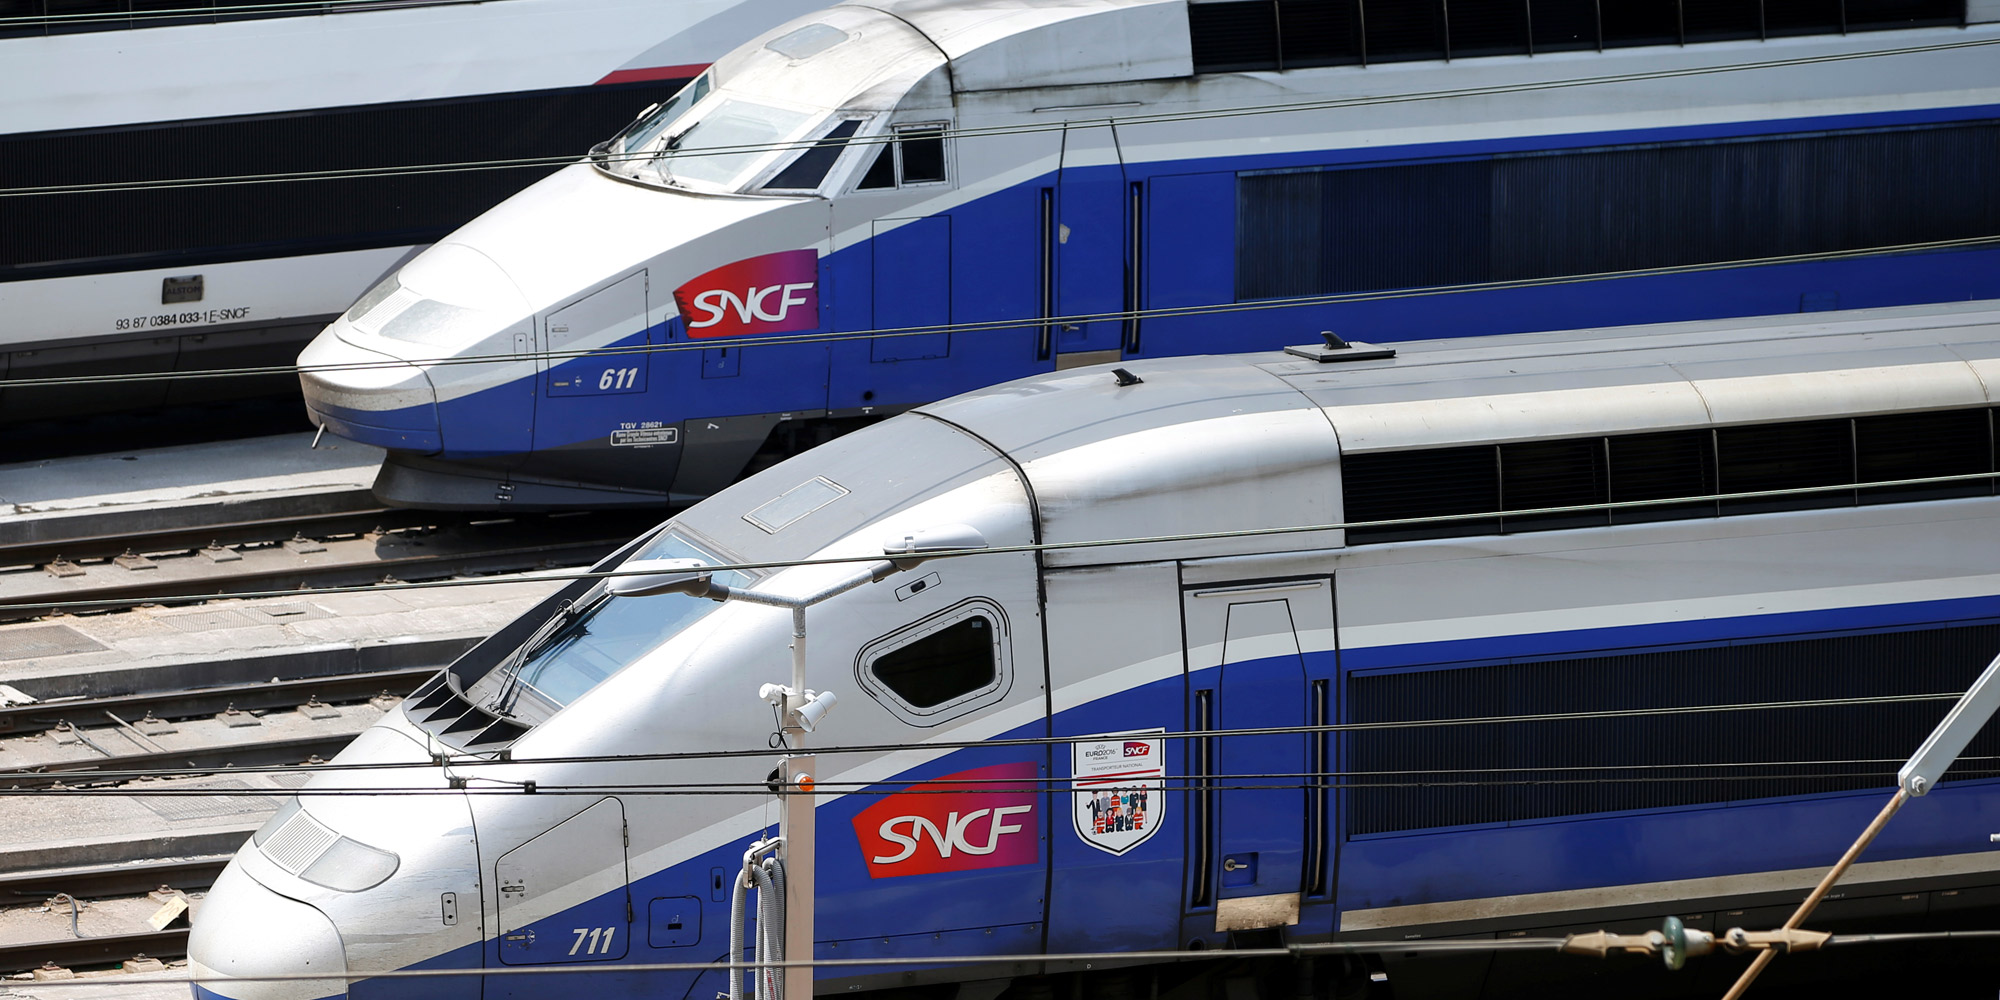 SNCF : Une lycéenne reçoit une amende... pour avoir payé un ticket de train trop cher !